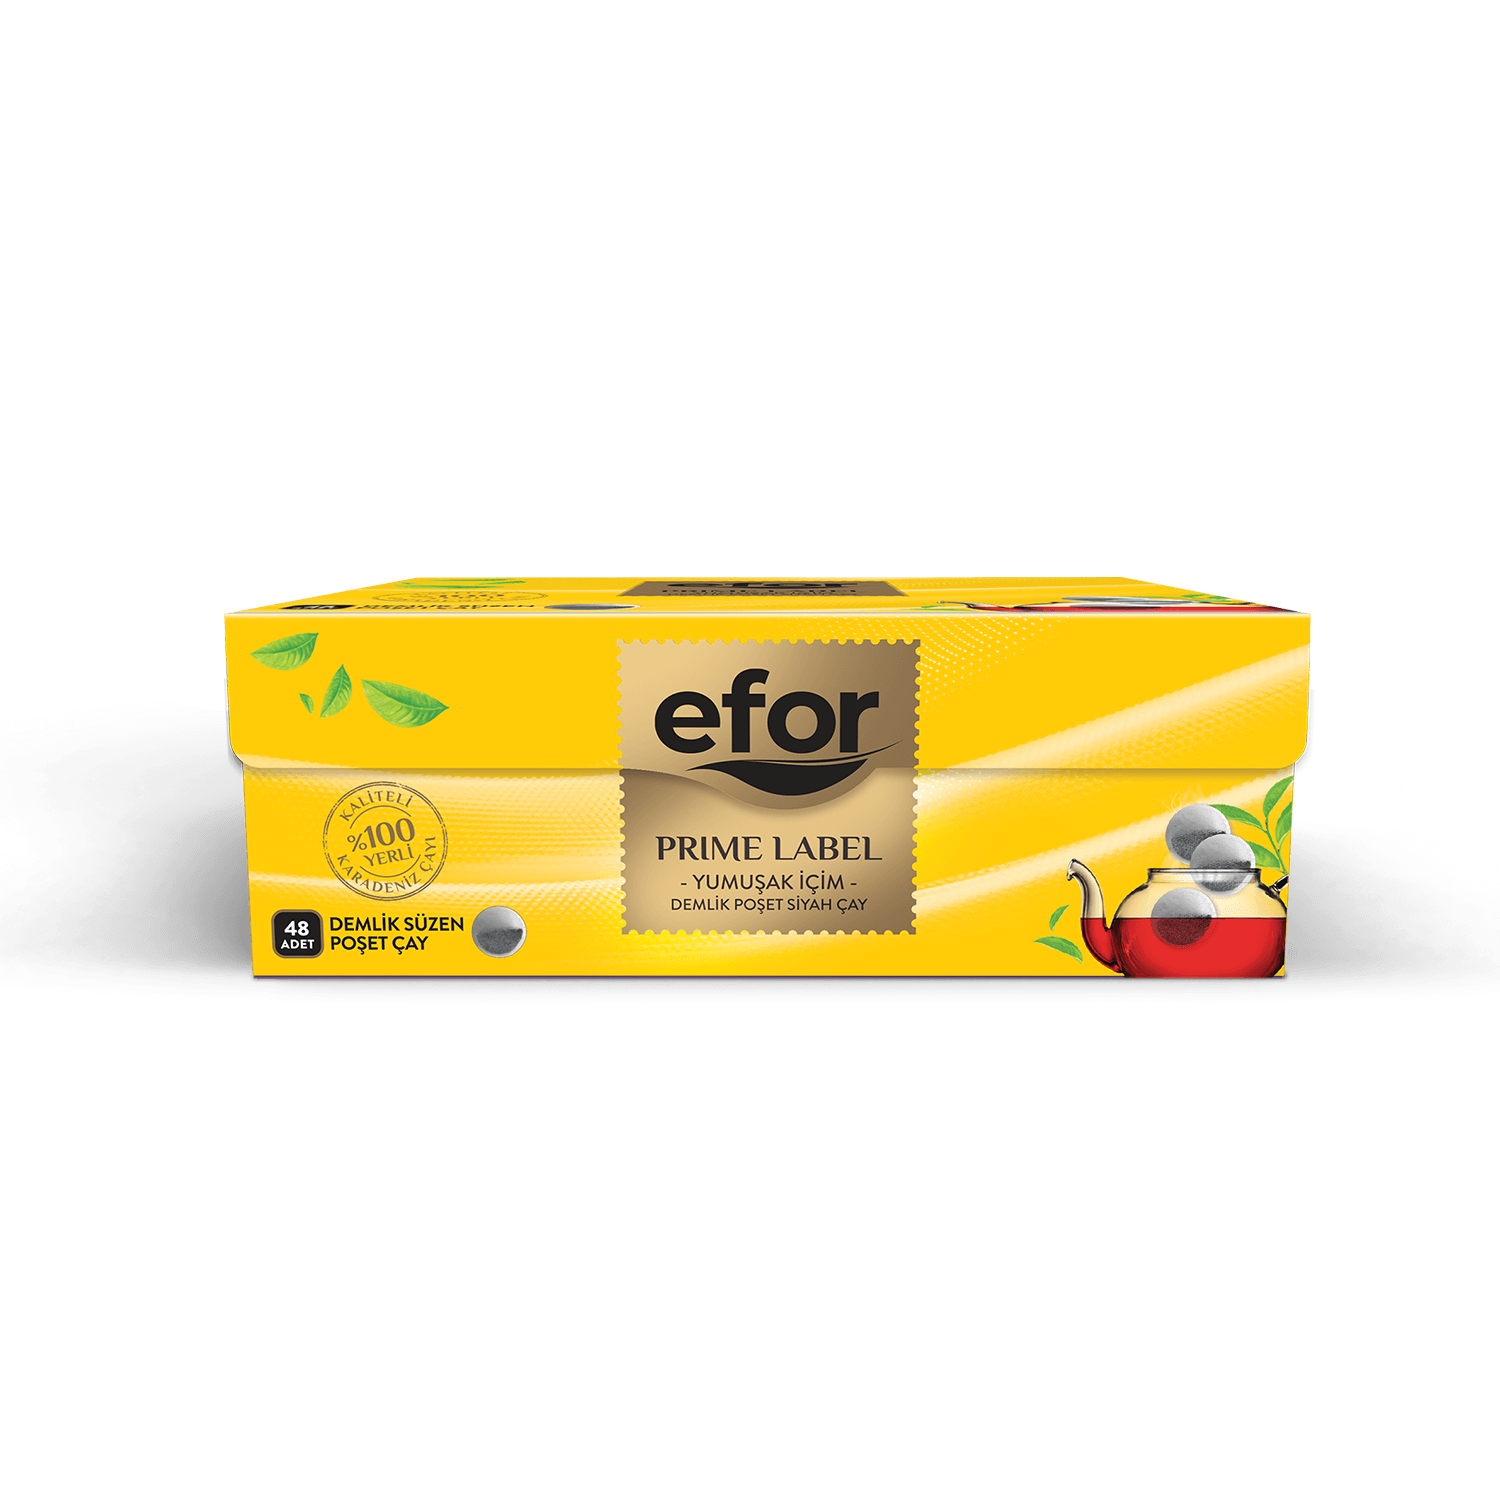 Efor Prime Label Teapot Tea Bags (48 pieces)